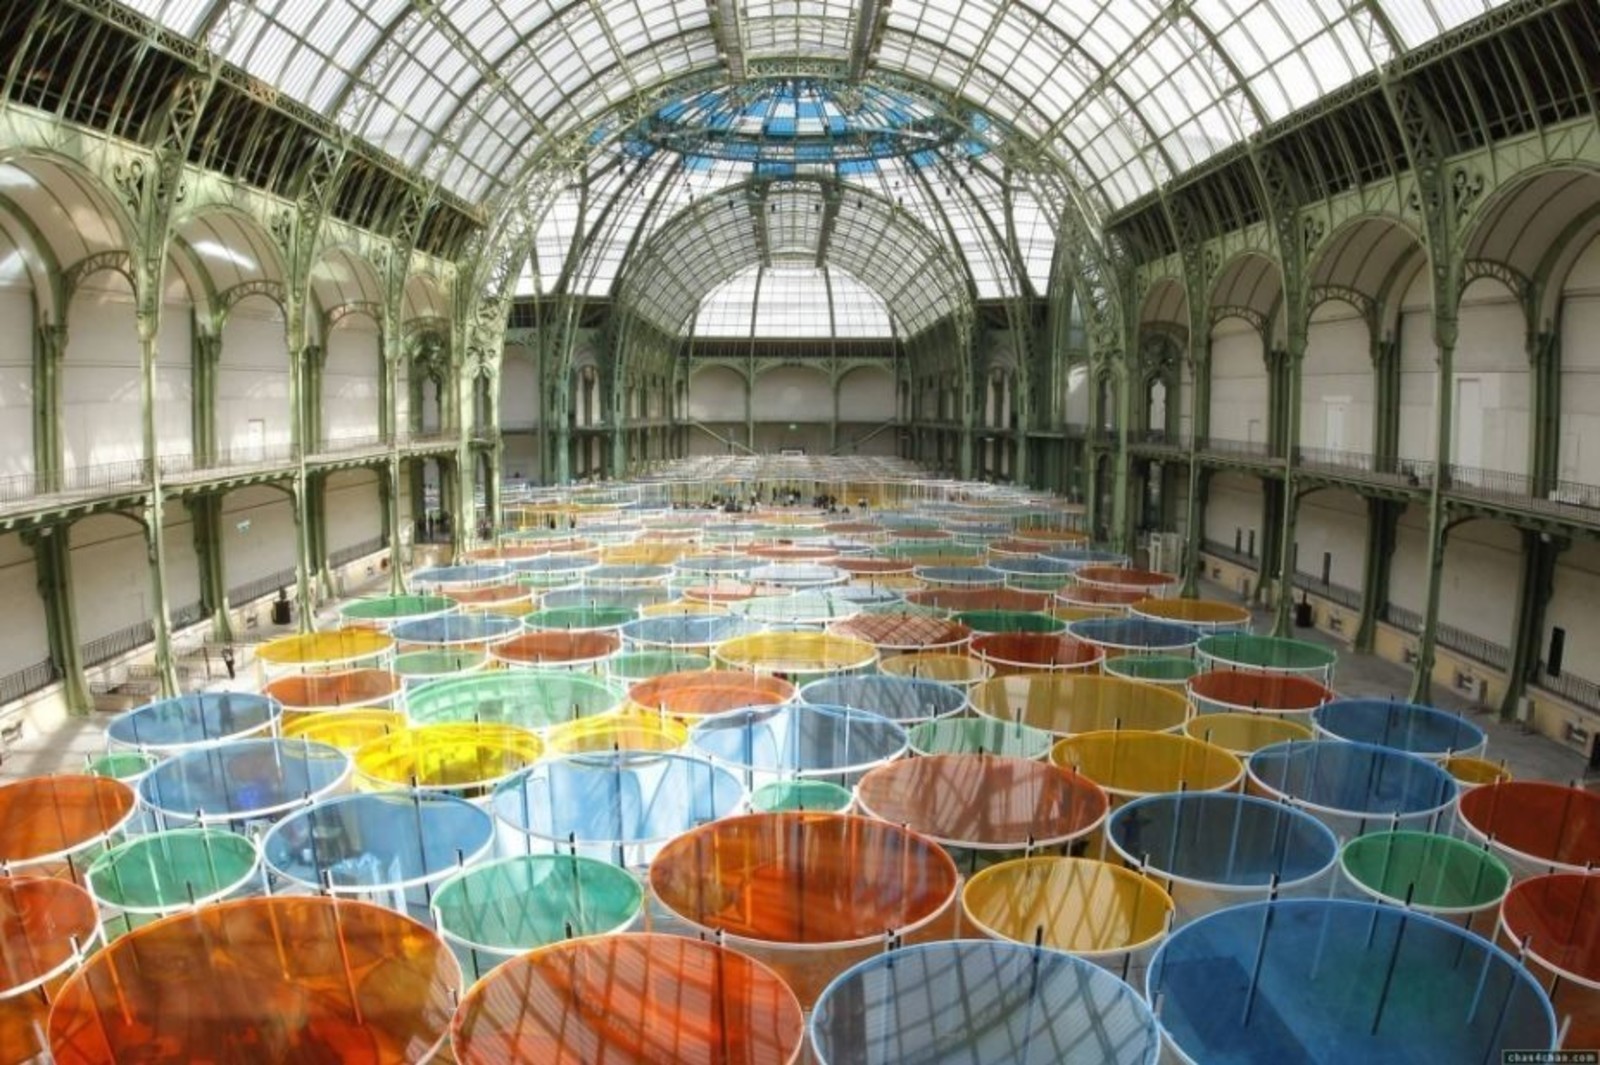 Daniel Buren. Exsentrique(s), travail in situ. 2012. Installation. Grand Palais (Paris, France).